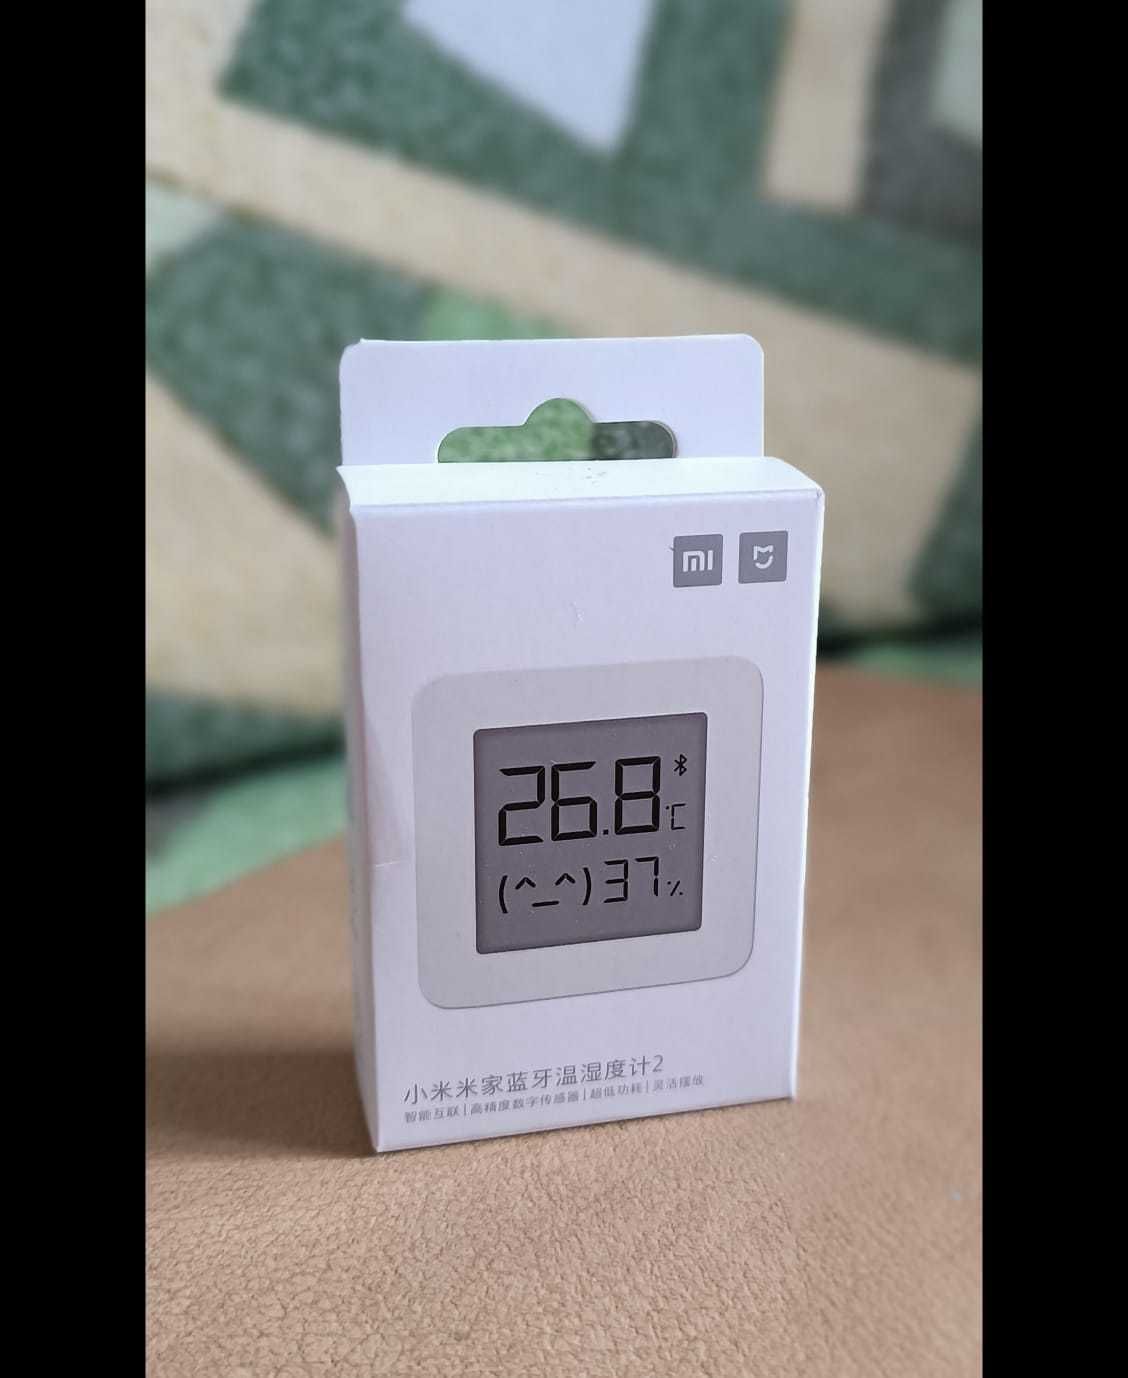 продам Датчик температуры и уровня влажности Xiaomi Mi Smart Home